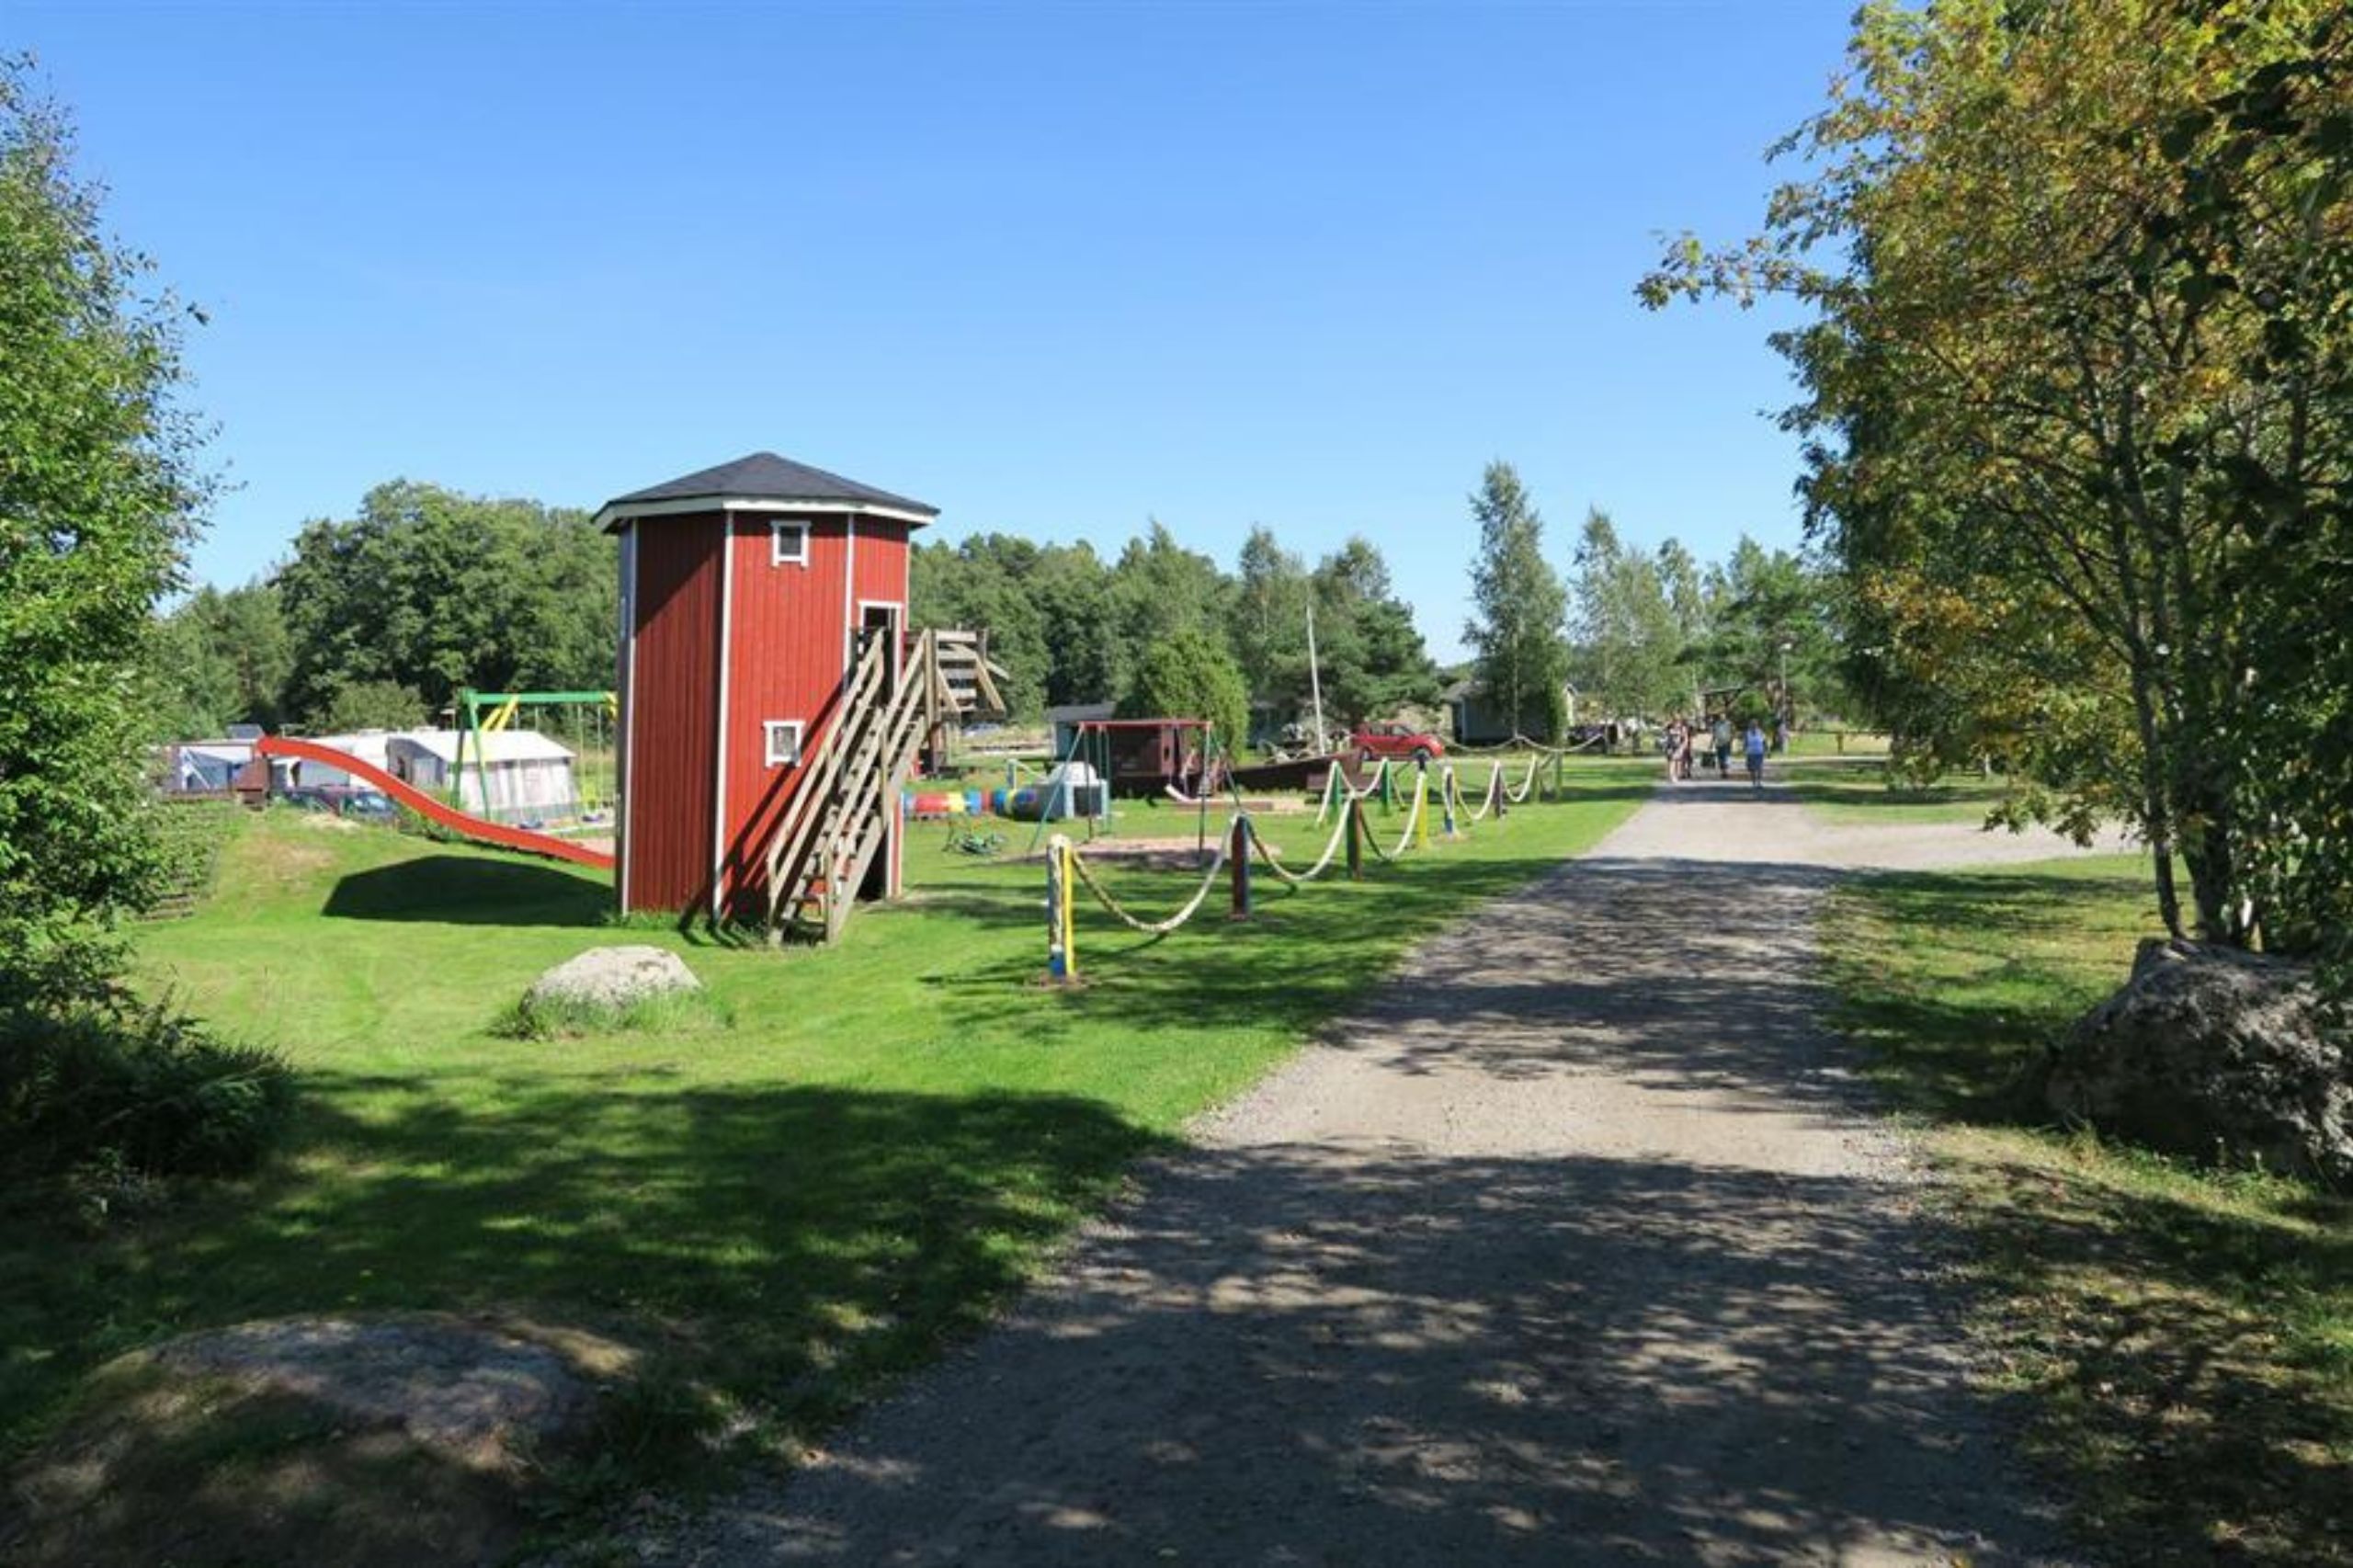 Perfekt för alla barn och med garanterat kul - det är lekplatsen på Livonsaari Caravan i Finland det.